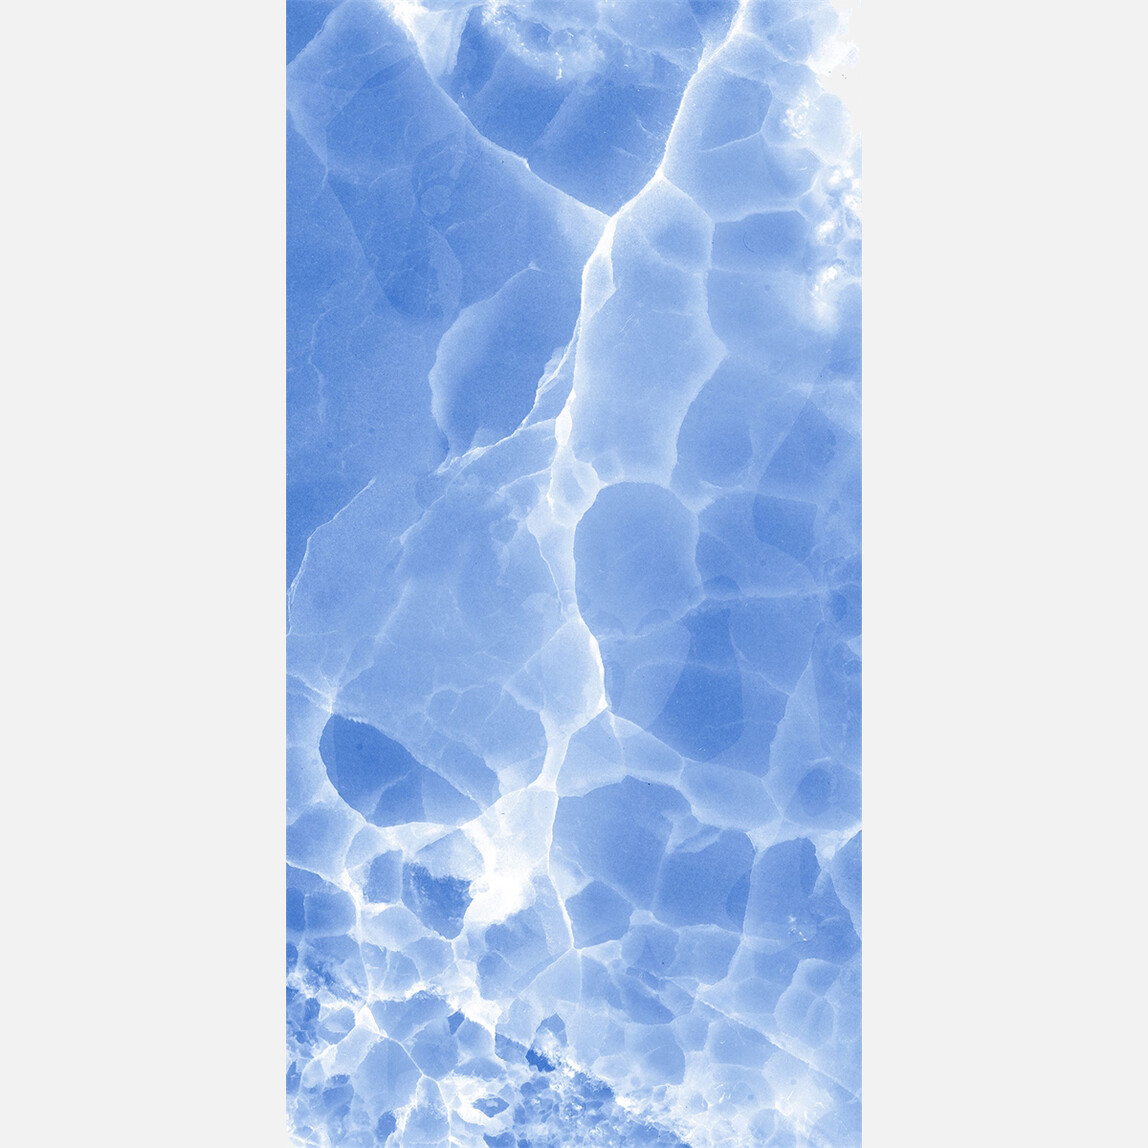    Kale Seramik Waterfall Mavi 30x60cm GS-D7634 